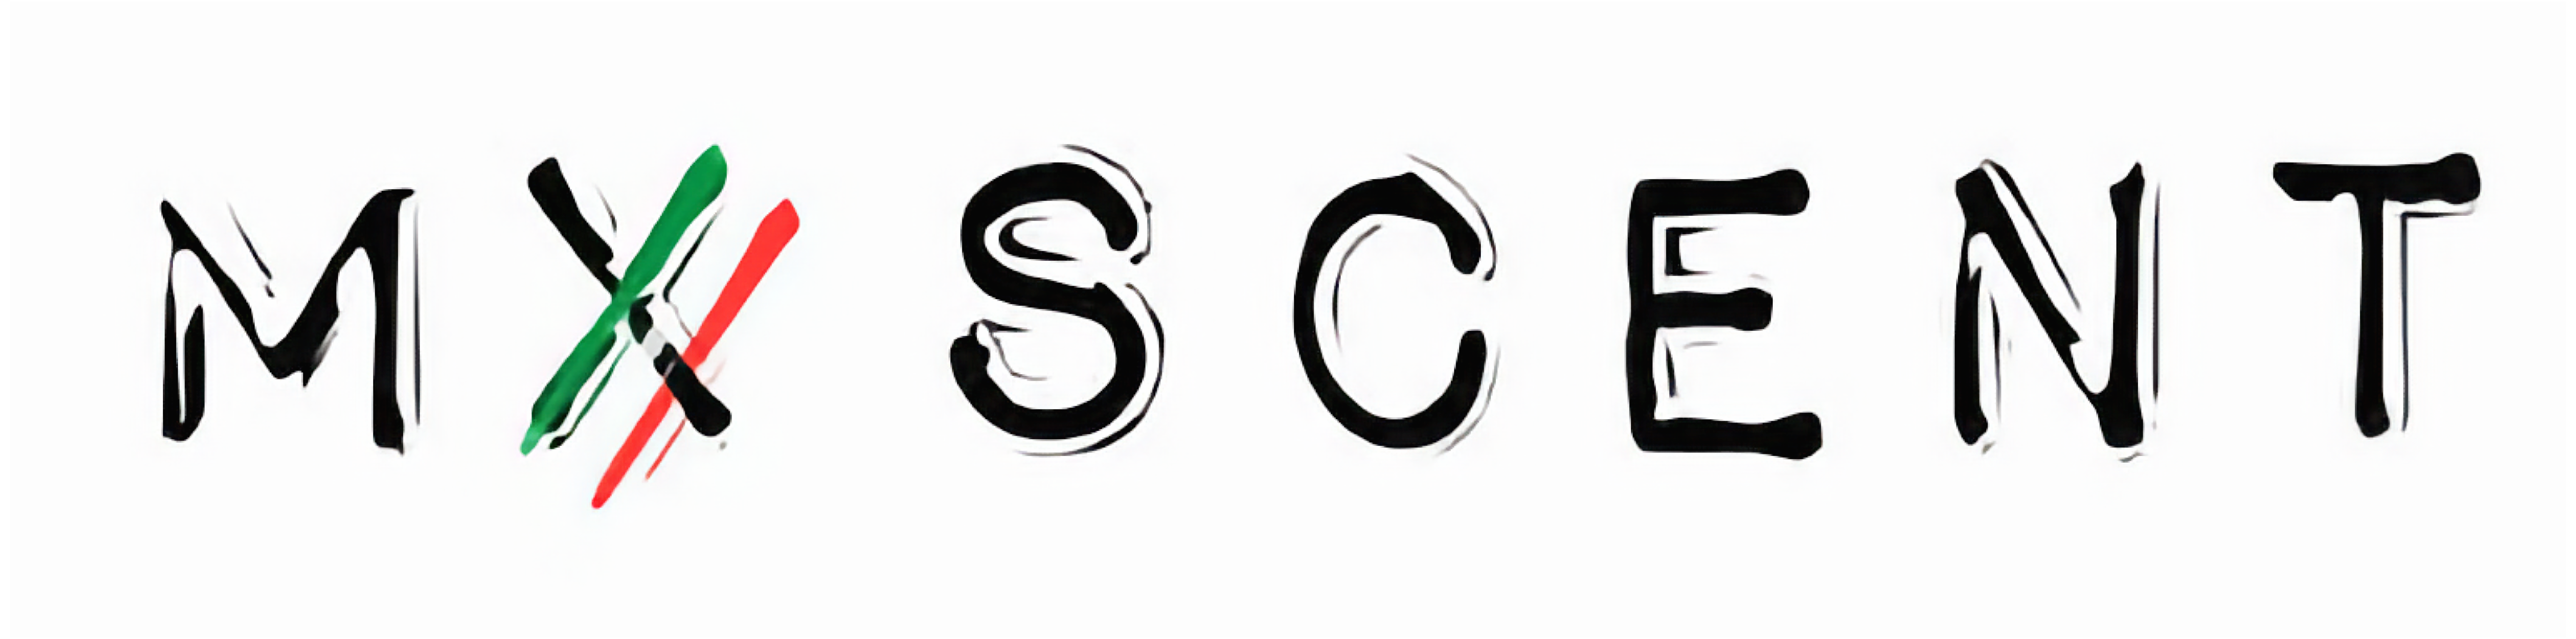 mxscent-logo